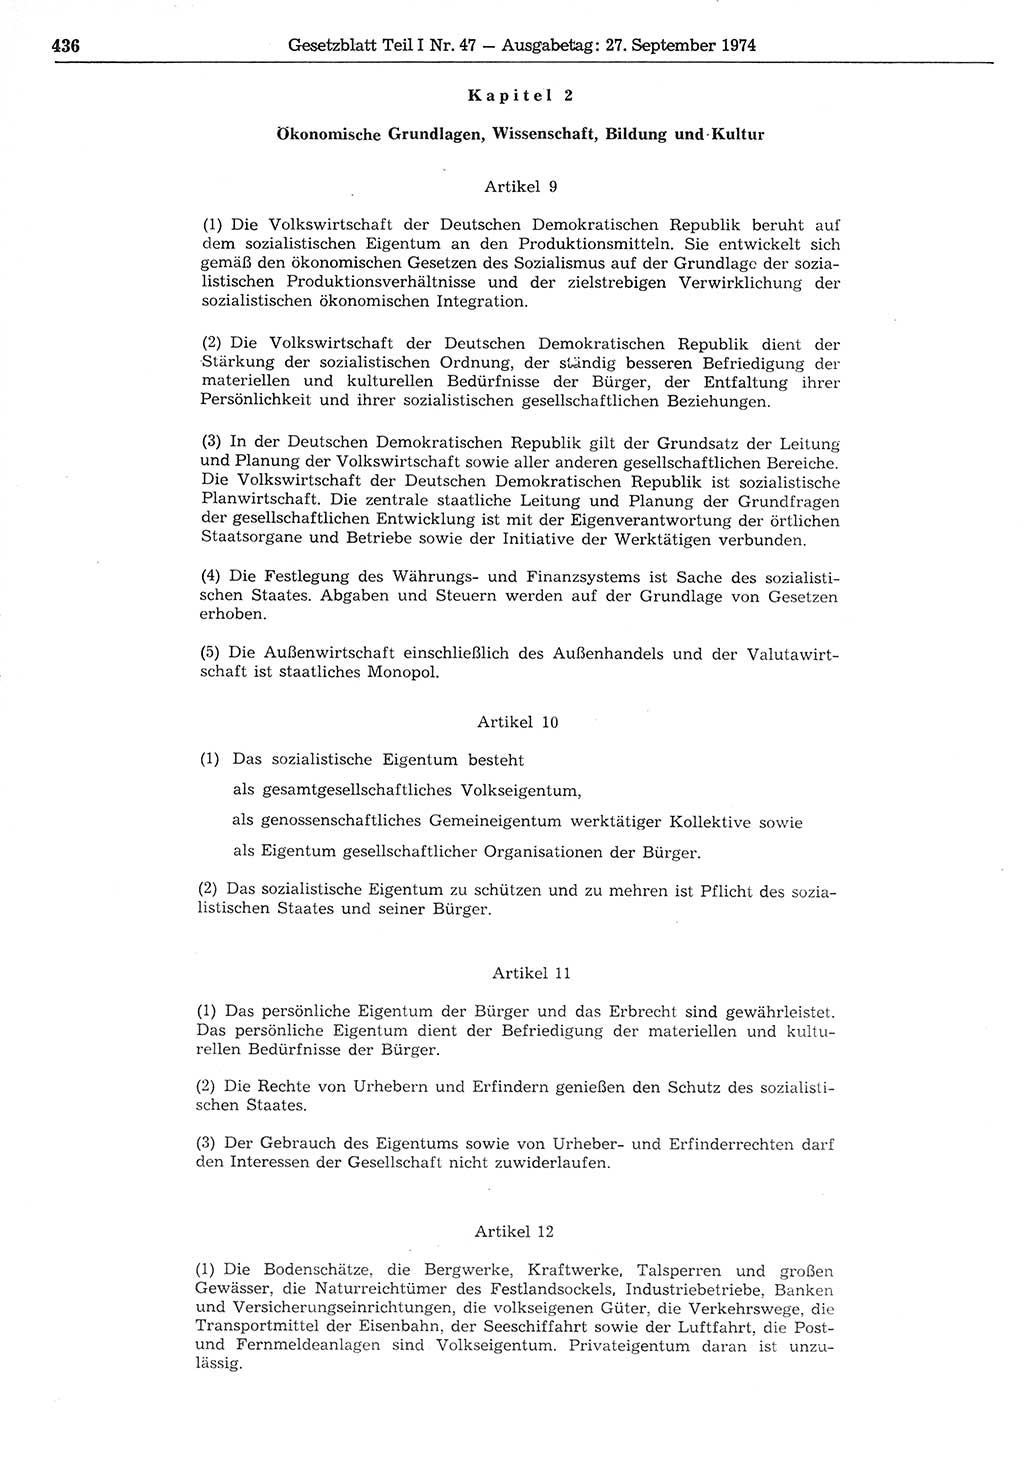 Gesetzblatt (GBl.) der Deutschen Demokratischen Republik (DDR) Teil Ⅰ 1974, Seite 436 (GBl. DDR Ⅰ 1974, S. 436)